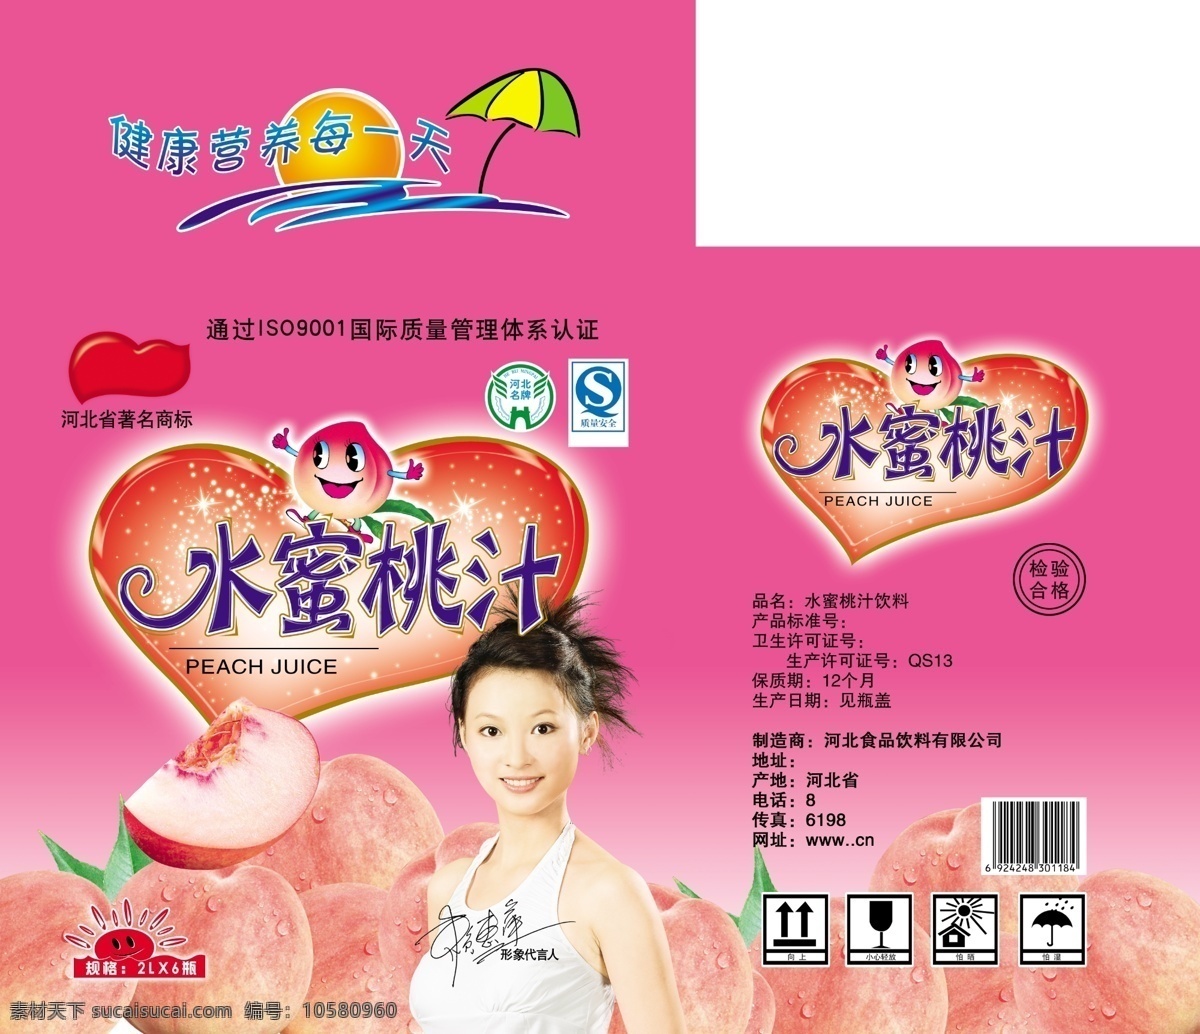 水蜜桃 汁 包装箱 半个桃 小伞 心 灿烂的心型 美女 桃叶 包装设计 广告设计模板 源文件 源文件库